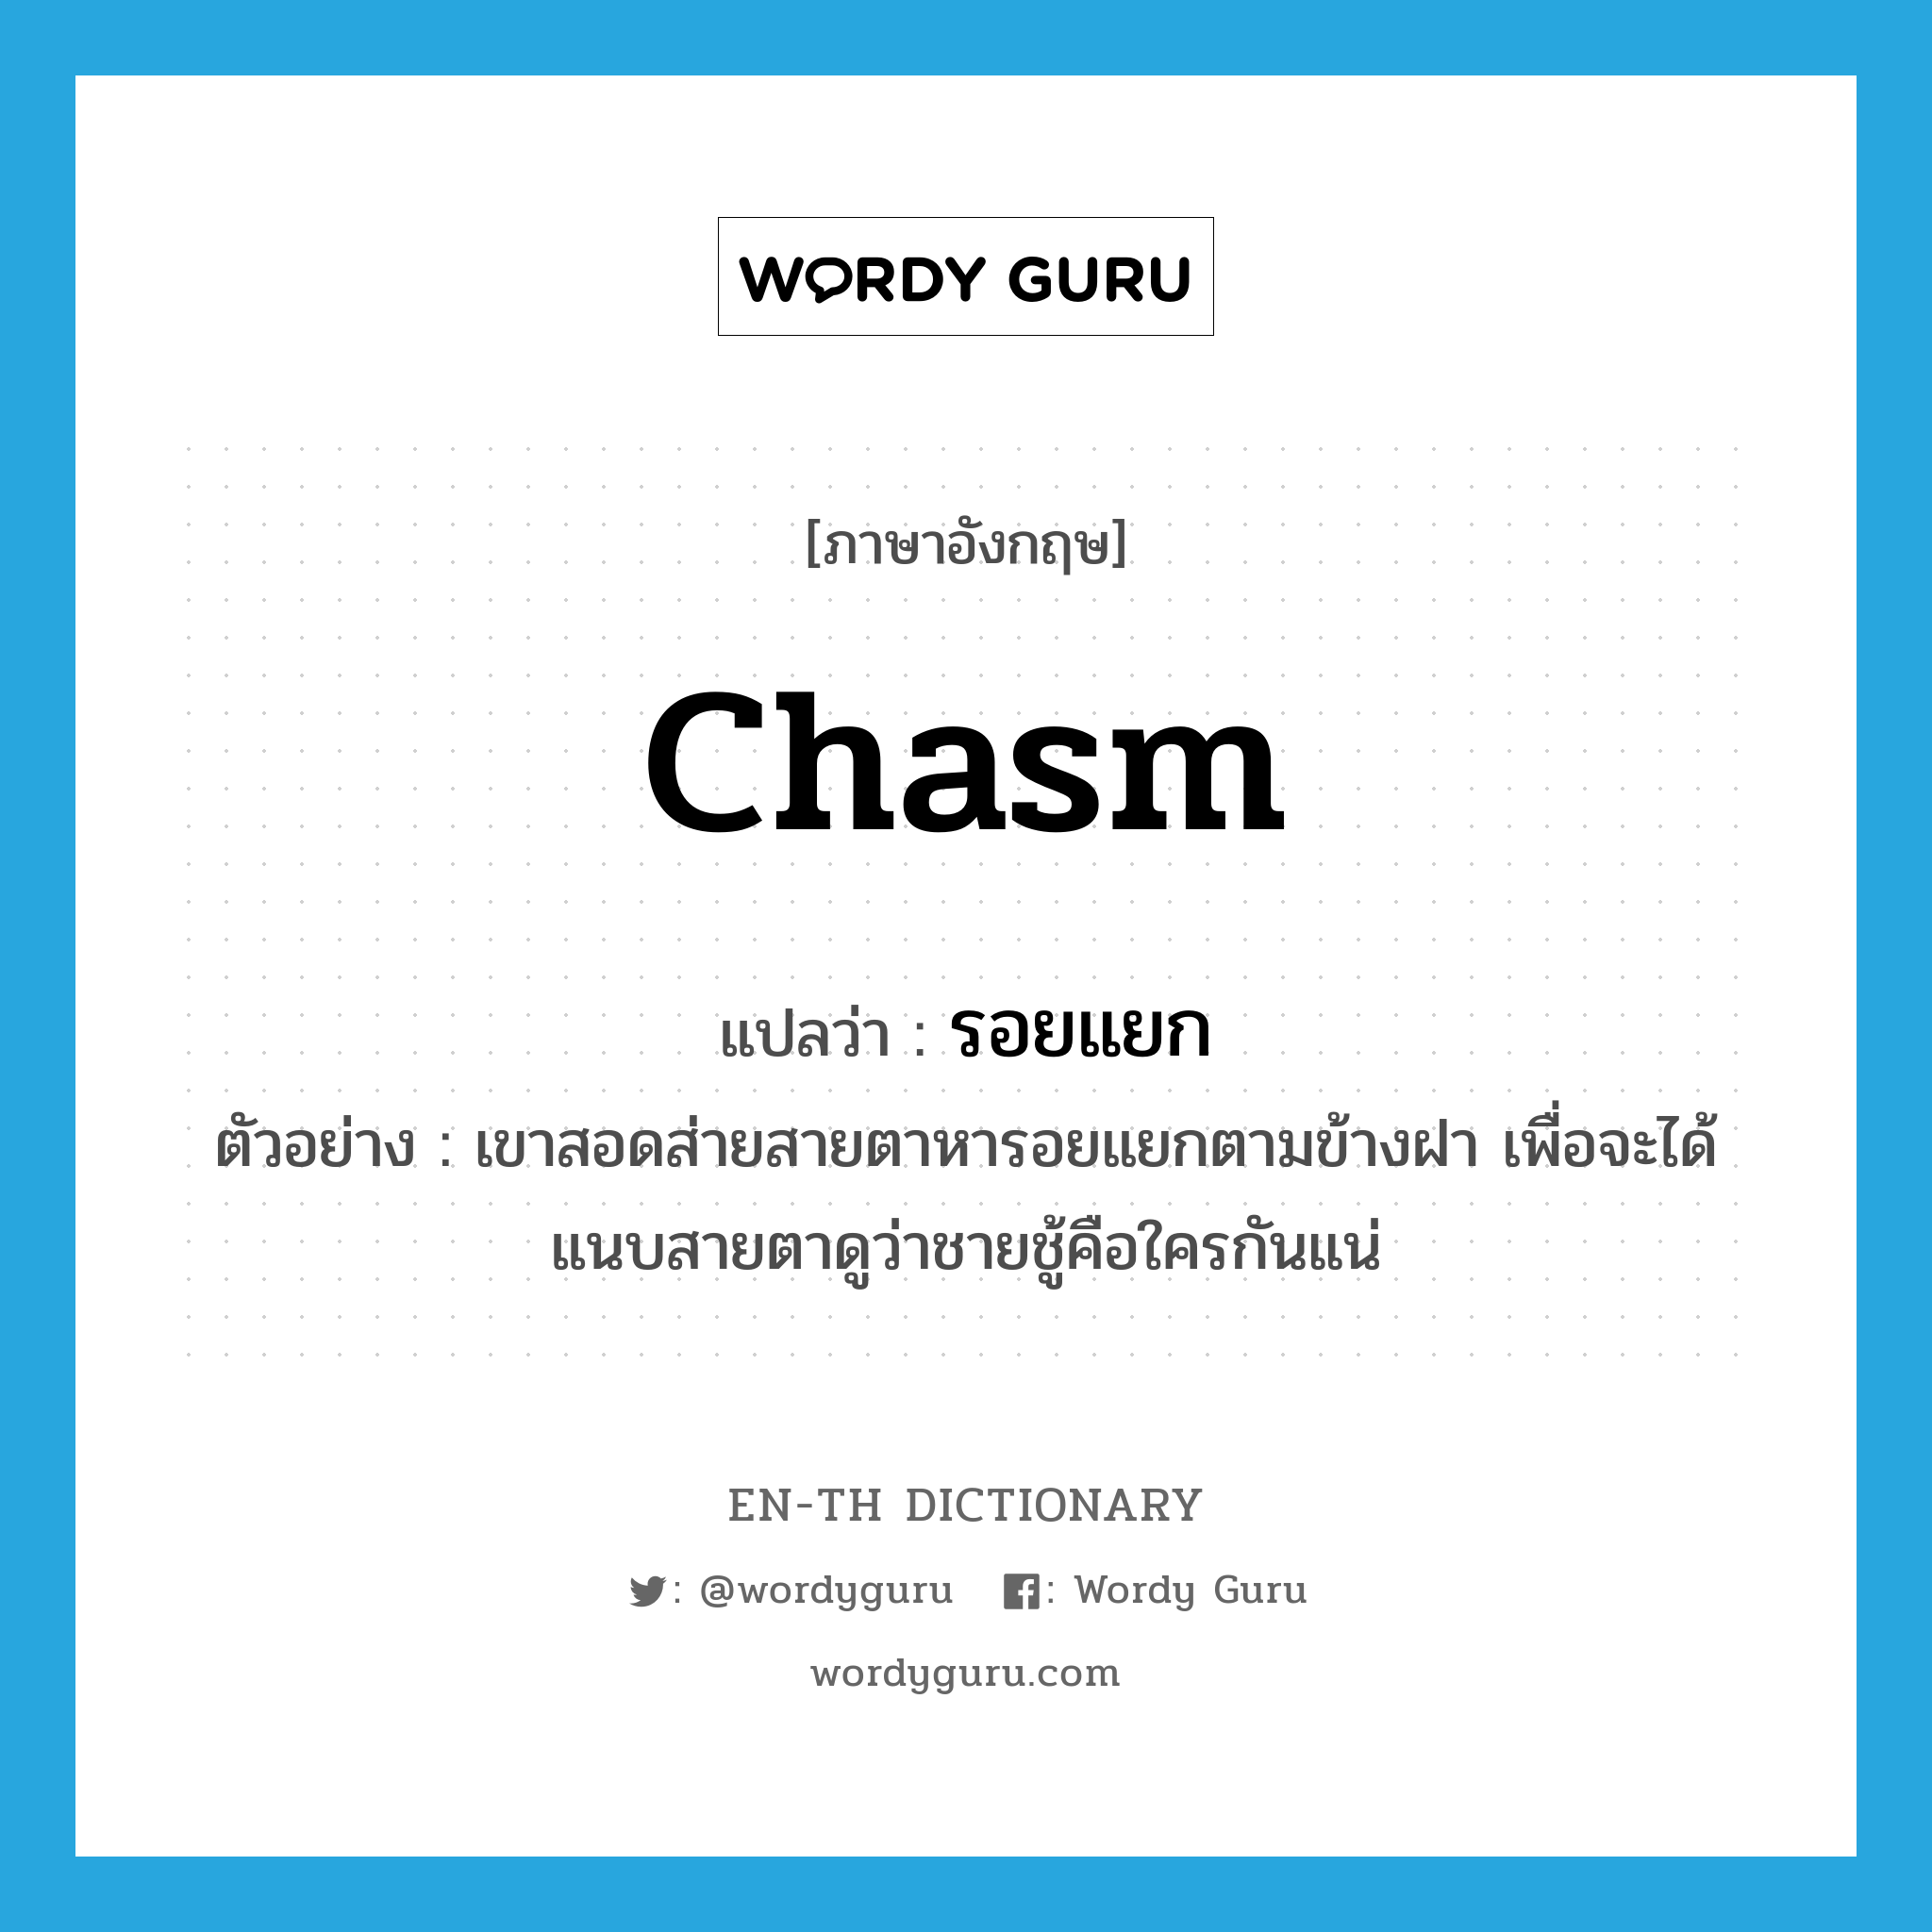 chasm แปลว่า?, คำศัพท์ภาษาอังกฤษ chasm แปลว่า รอยแยก ประเภท N ตัวอย่าง เขาสอดส่ายสายตาหารอยแยกตามข้างฝา เพื่อจะได้แนบสายตาดูว่าชายชู้คือใครกันแน่ หมวด N